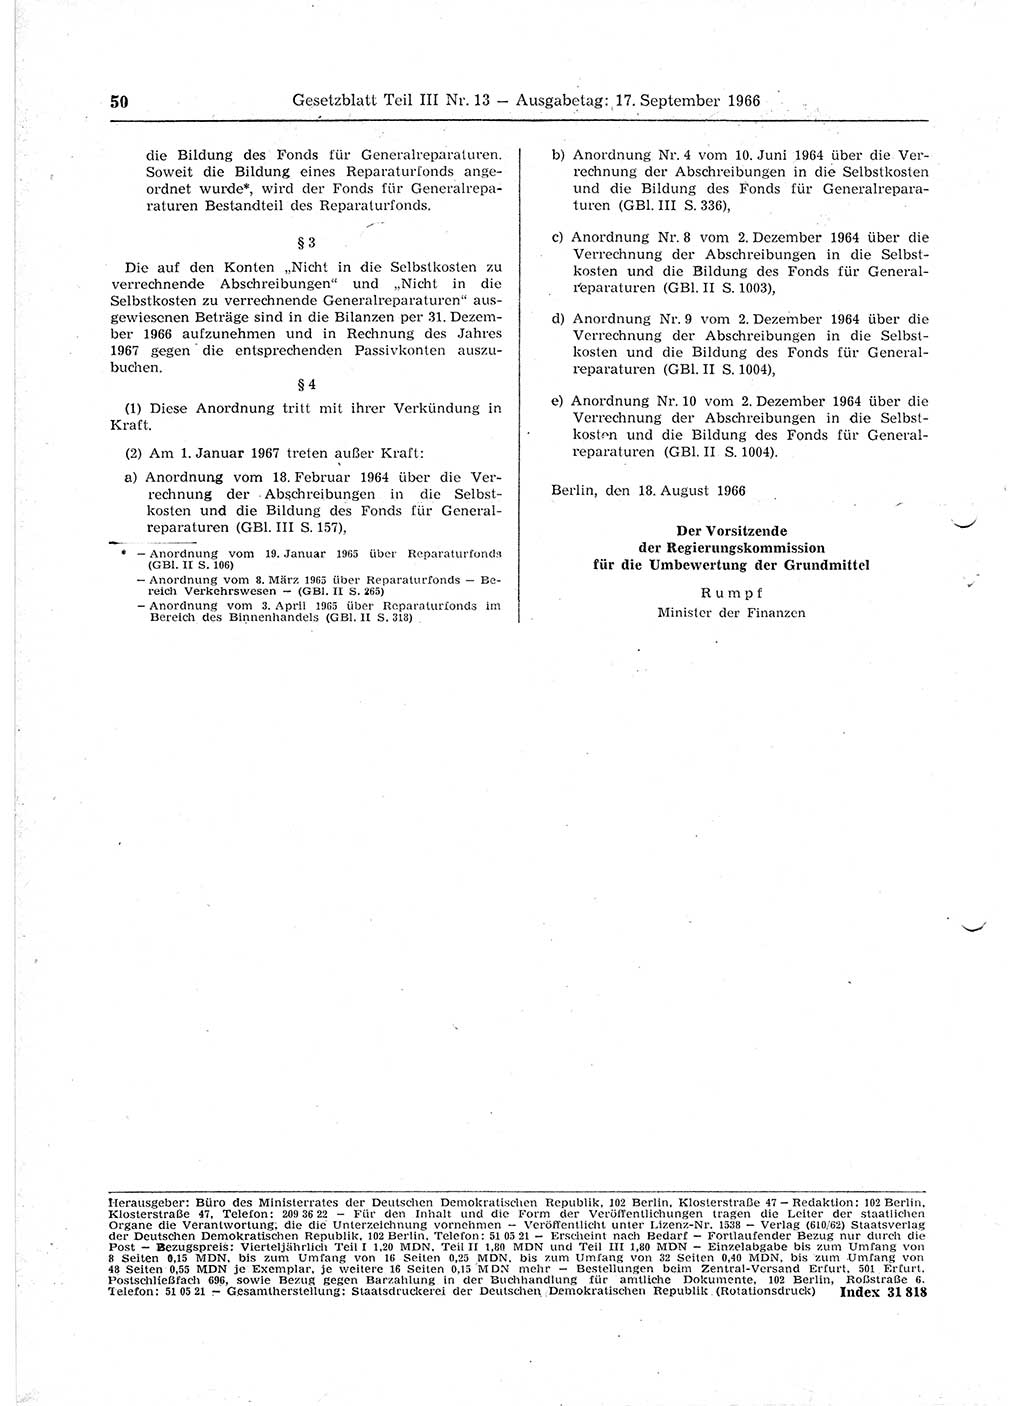 Gesetzblatt (GBl.) der Deutschen Demokratischen Republik (DDR) Teil ⅠⅠⅠ 1966, Seite 50 (GBl. DDR ⅠⅠⅠ 1966, S. 50)